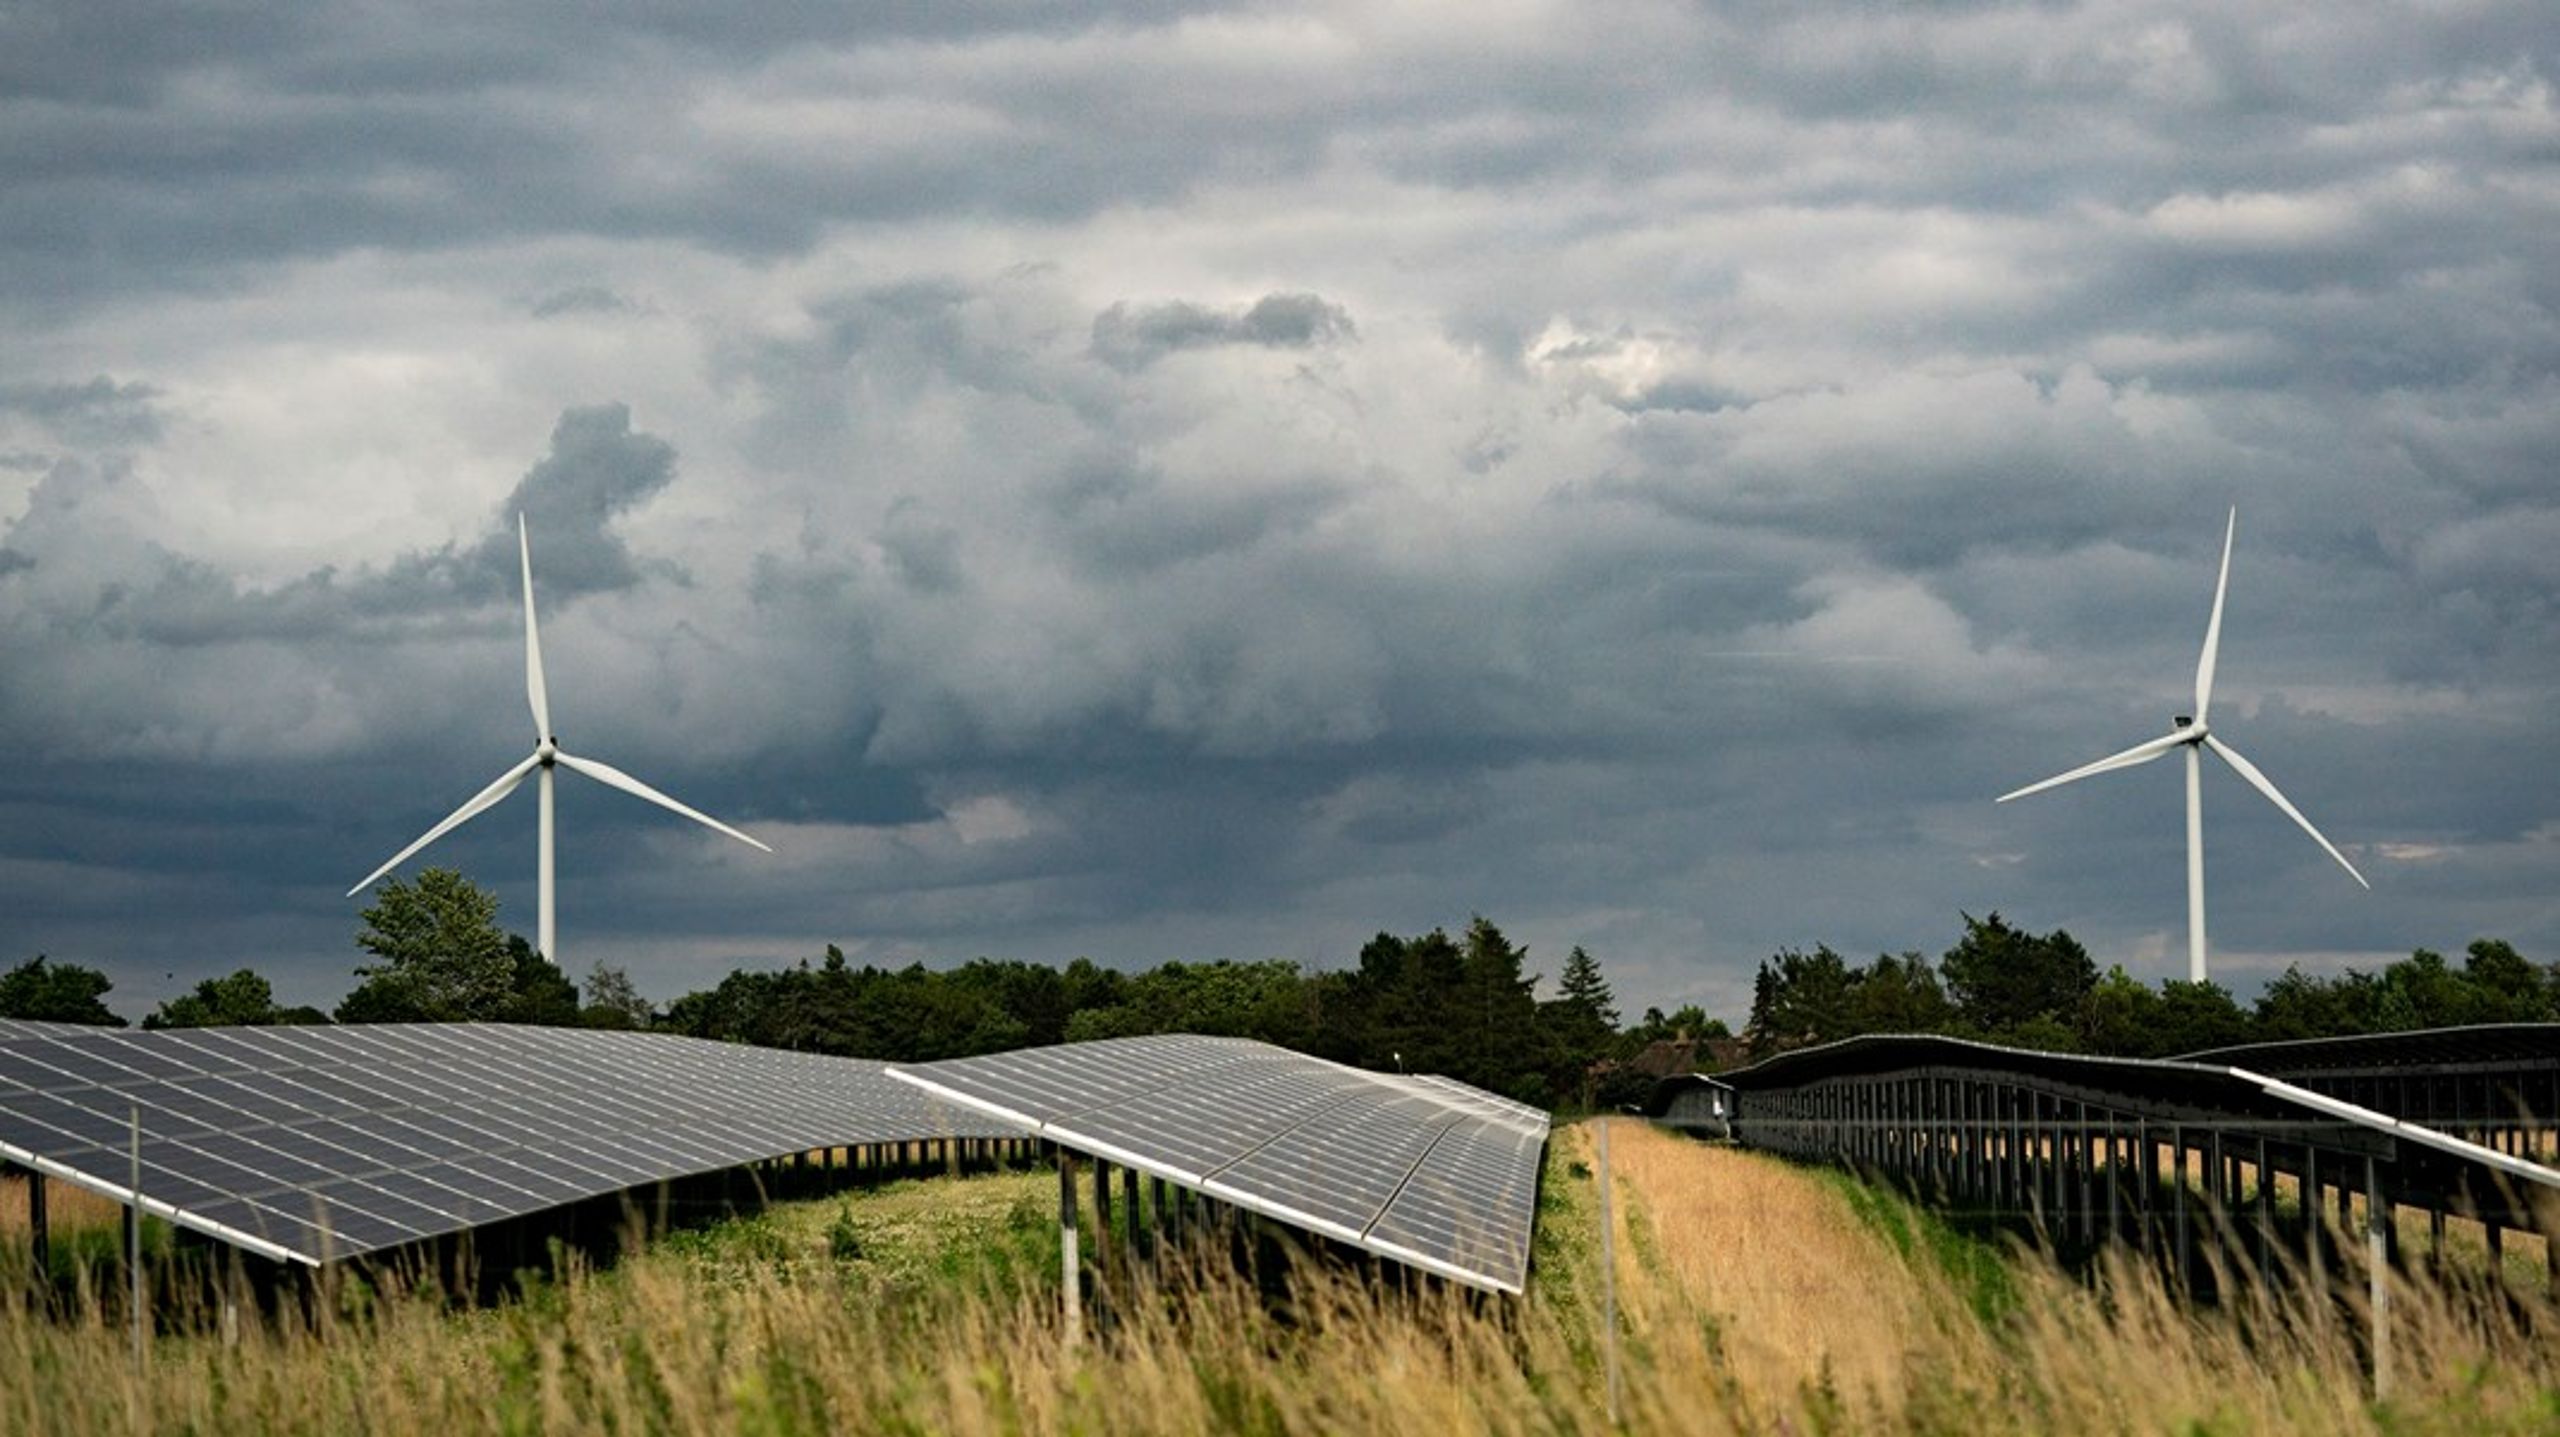 Når der opsættes nye vindmøller og solceller, kan naboerne få kompenseret sine gener. Men det gælder ikke ved store landanlæg som den kommende energiø på Bornholm. Det kan gå udover opbakningen til vedvarende energi, skriver Jacob Trøst (K).